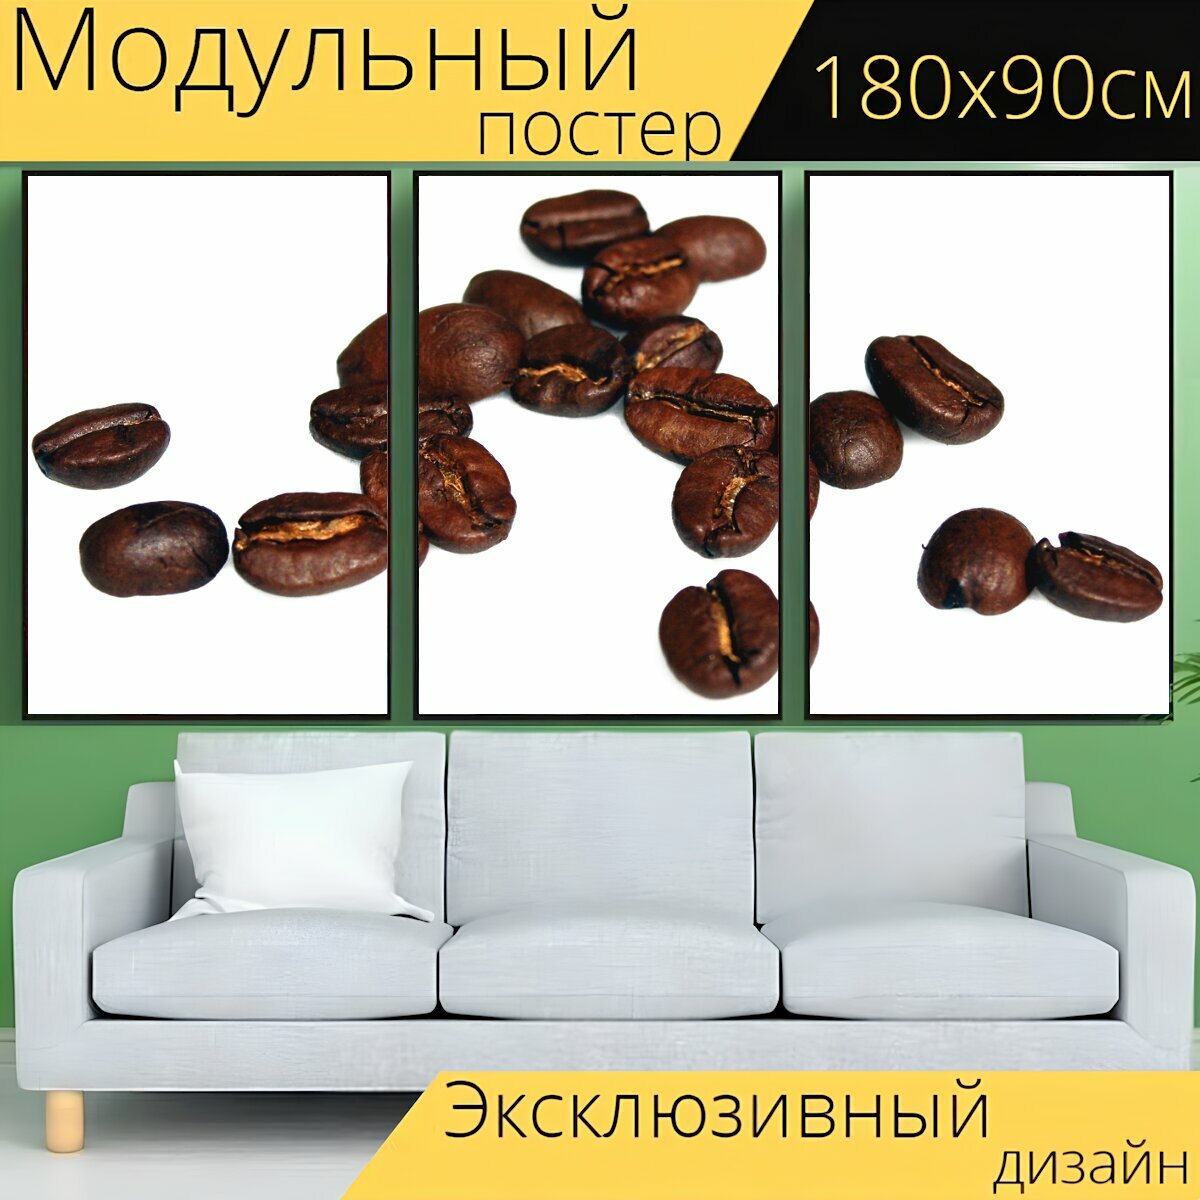 Модульный постер "Кофе, бобы, кофейные зерна" 180 x 90 см. для интерьера